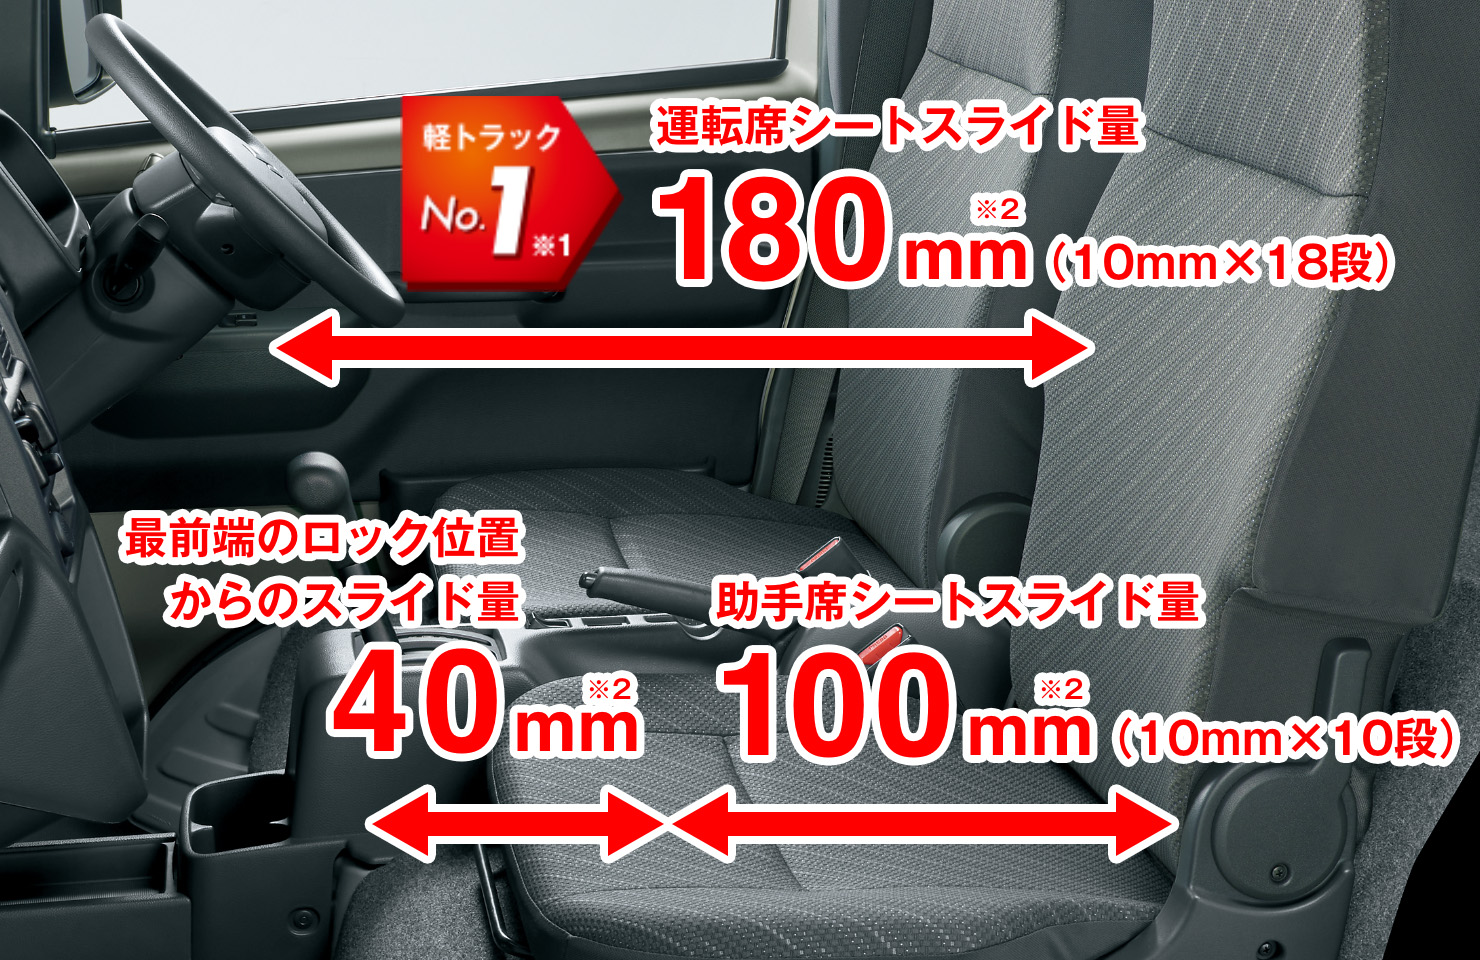 軽トラックNo.1※1 運転席シートスライド量180mm(10mm×18段) 助手席シートスライド量100mm(10mm×10段) 最前端のロック位置からのスライド量40mm